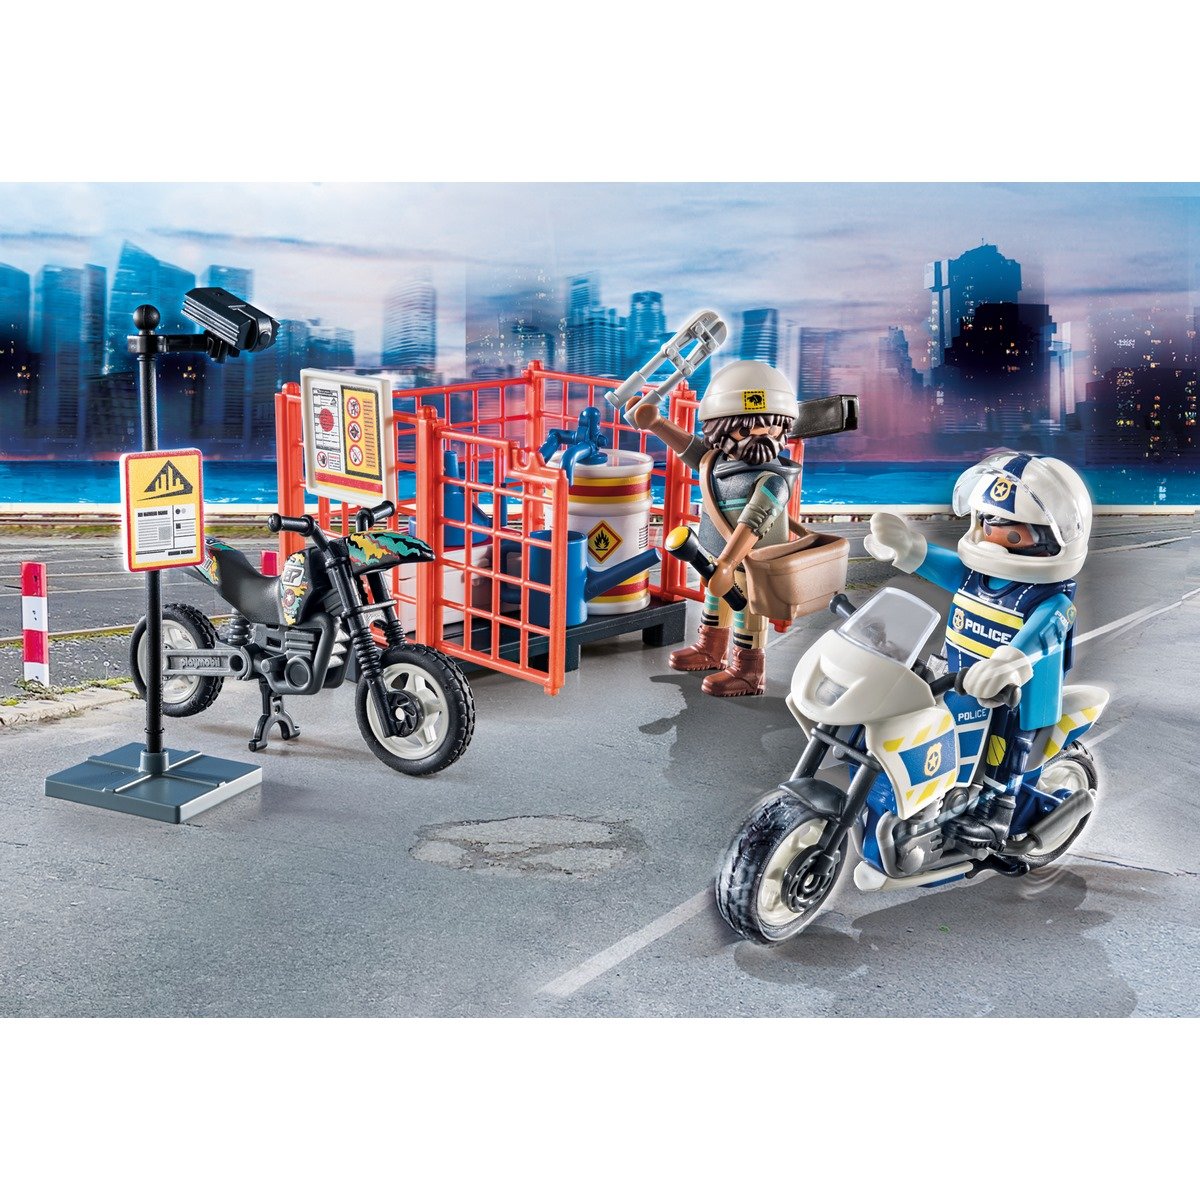 Playmobil Action policier à moto